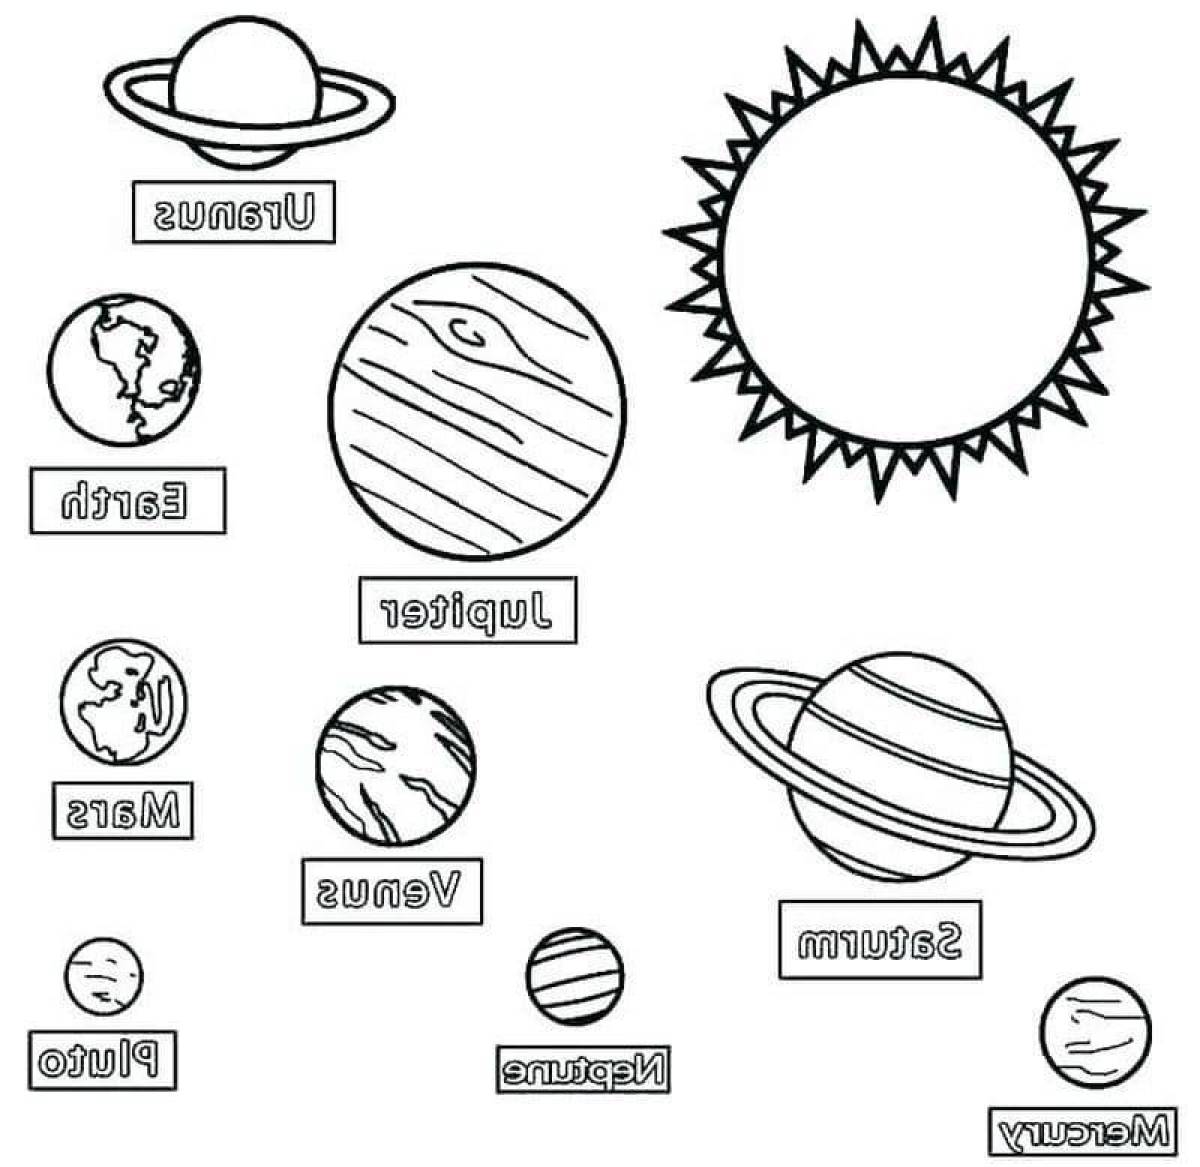 Картинки планеты солнечной системы для детей распечатать. Раскраска планеты солнечной системы для детей. Ра, краска планеты солнечной системы. Солнечная система раскраска для детей. Планеты раскраска для детей.